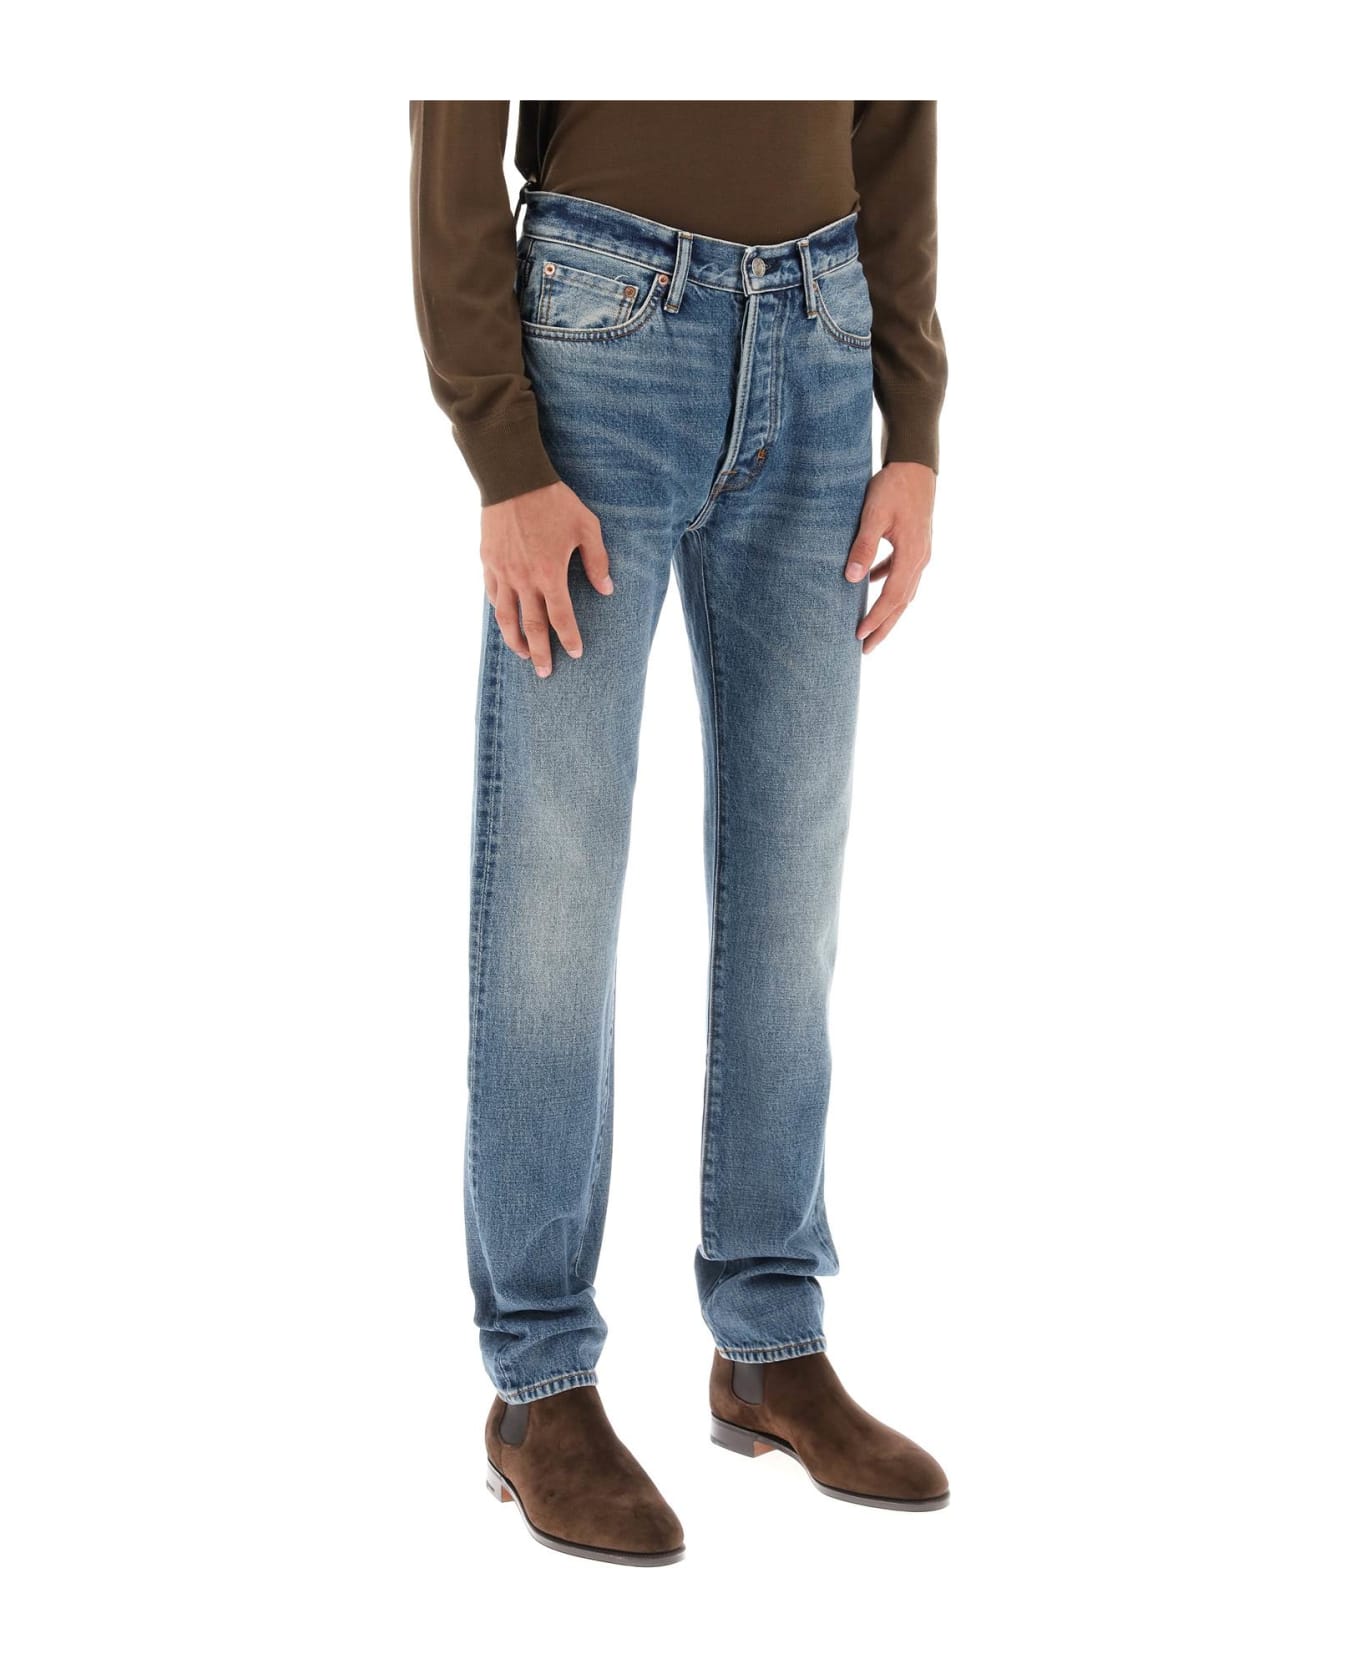 Tom Ford 5-pocket Straight-leg Jeans - Light blue